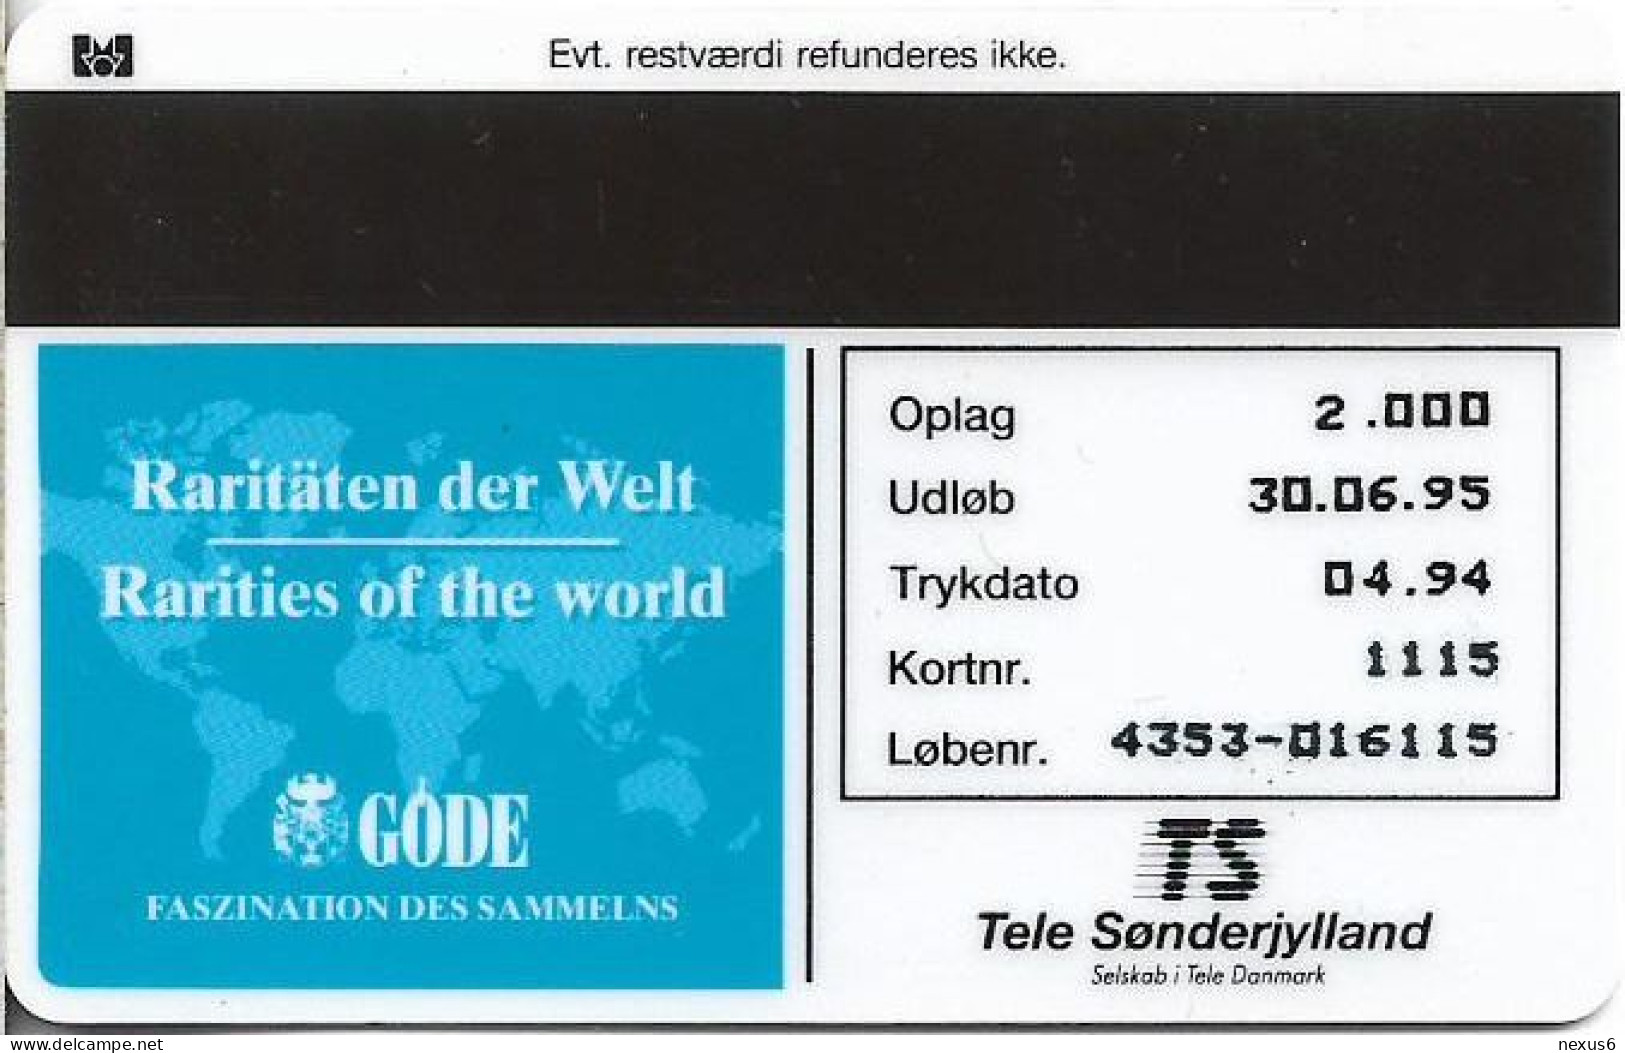 Denmark - TS - Rare Stamps - Merkur - TDTP044 - 04.1994, 5Kr, 2.000ex, Used - Denmark